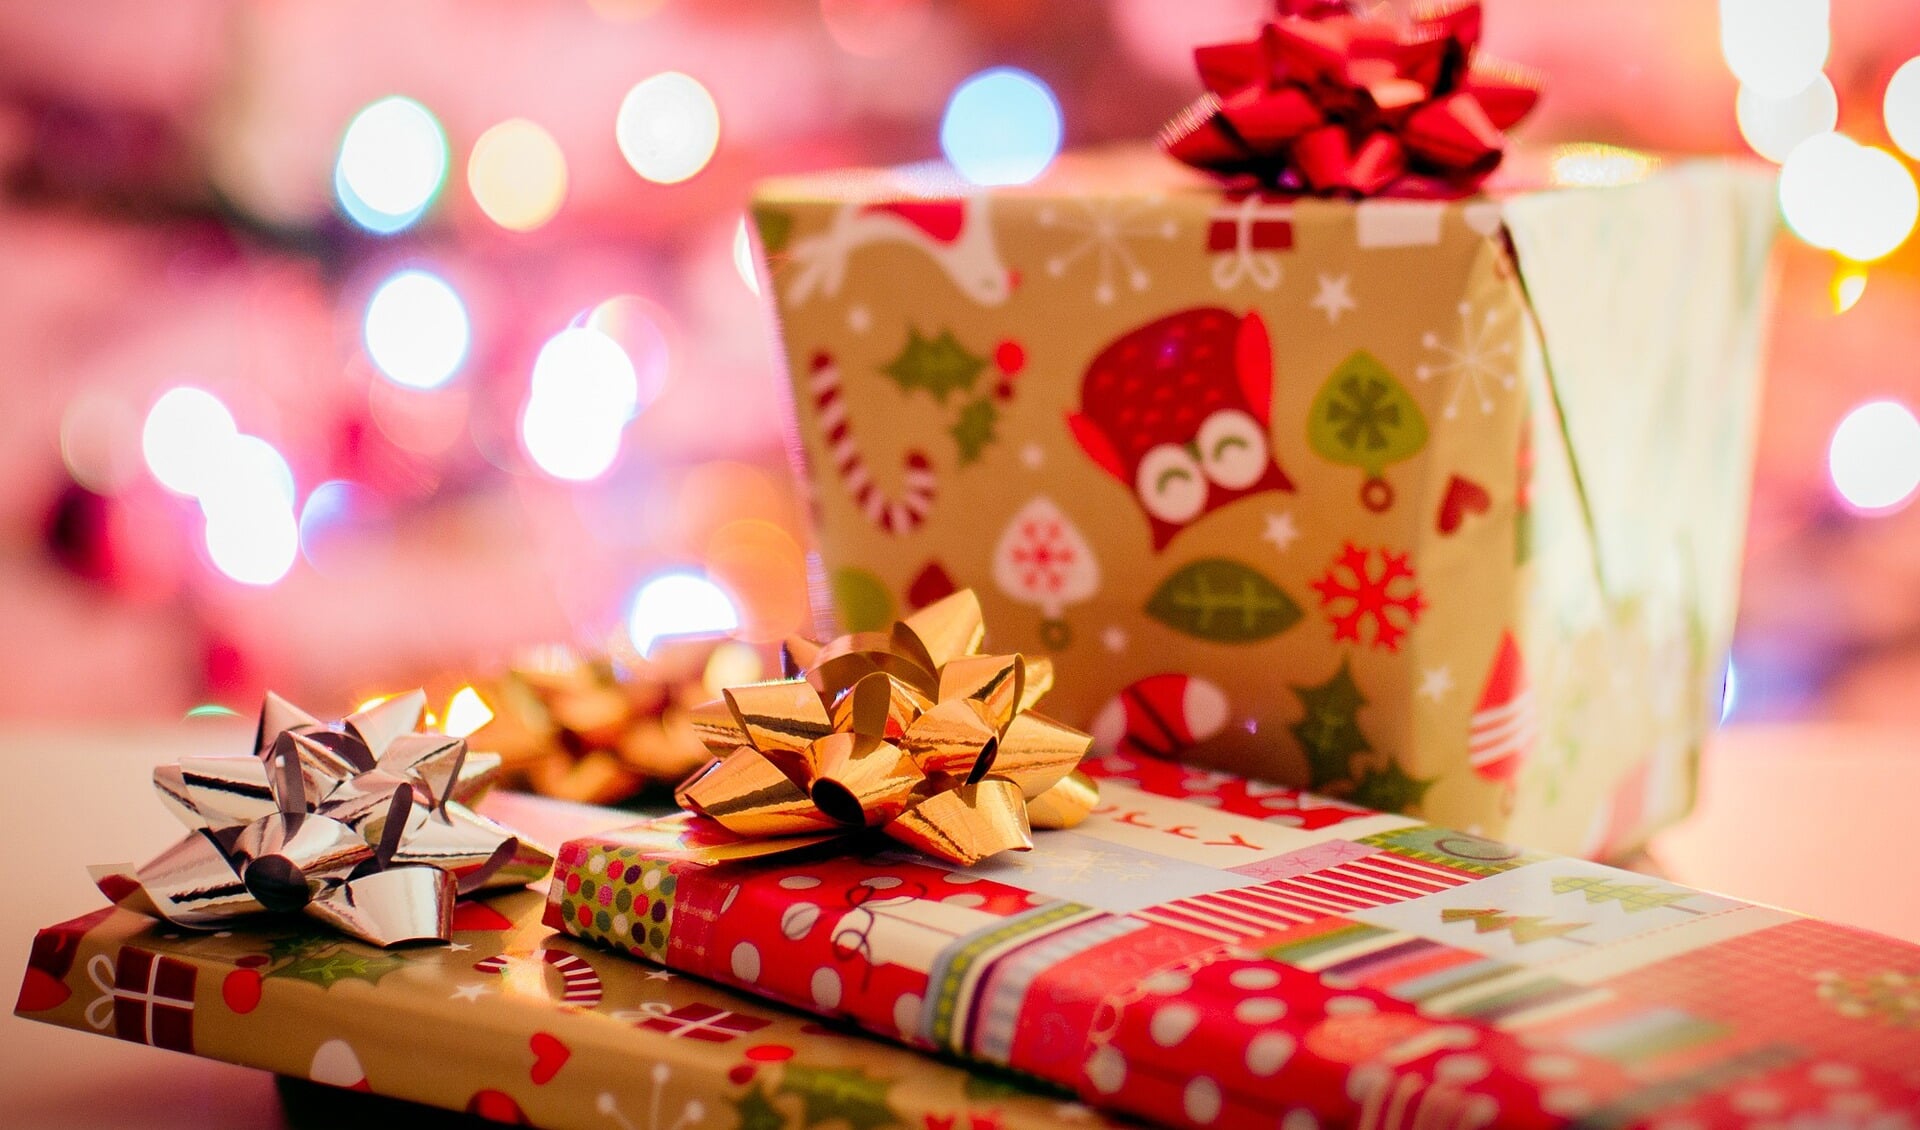 Kerstpakkettenactie voor mensen in armoede Foto StockSnap / Pixabay